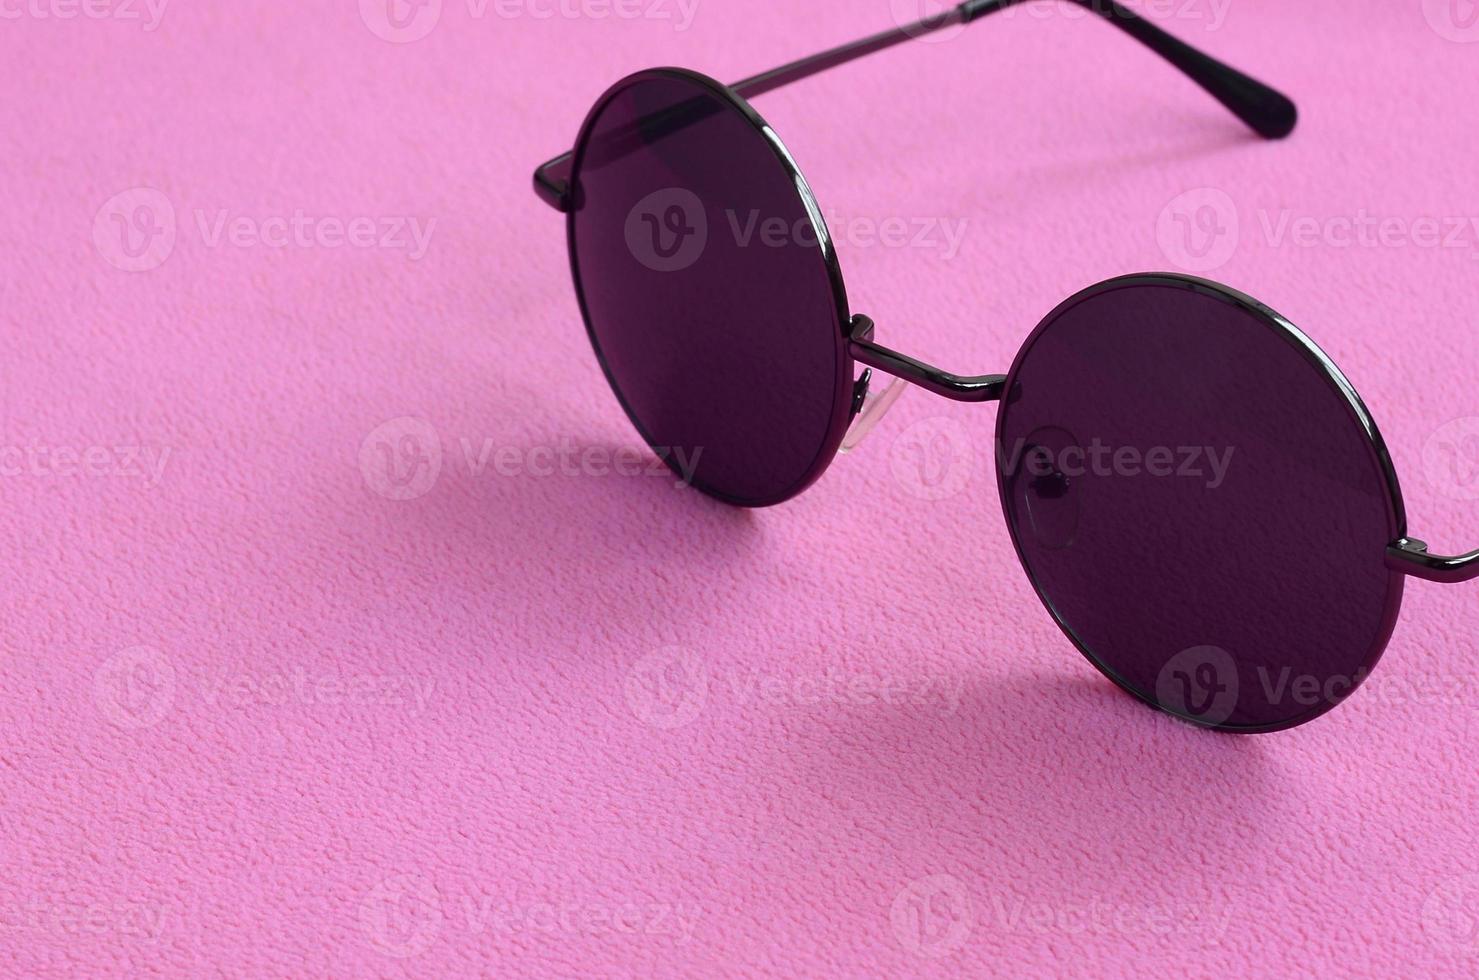 des lunettes de soleil noires élégantes avec des lunettes rondes reposent sur une couverture en tissu polaire rose clair doux et moelleux. image de fond à la mode aux couleurs féminines photo